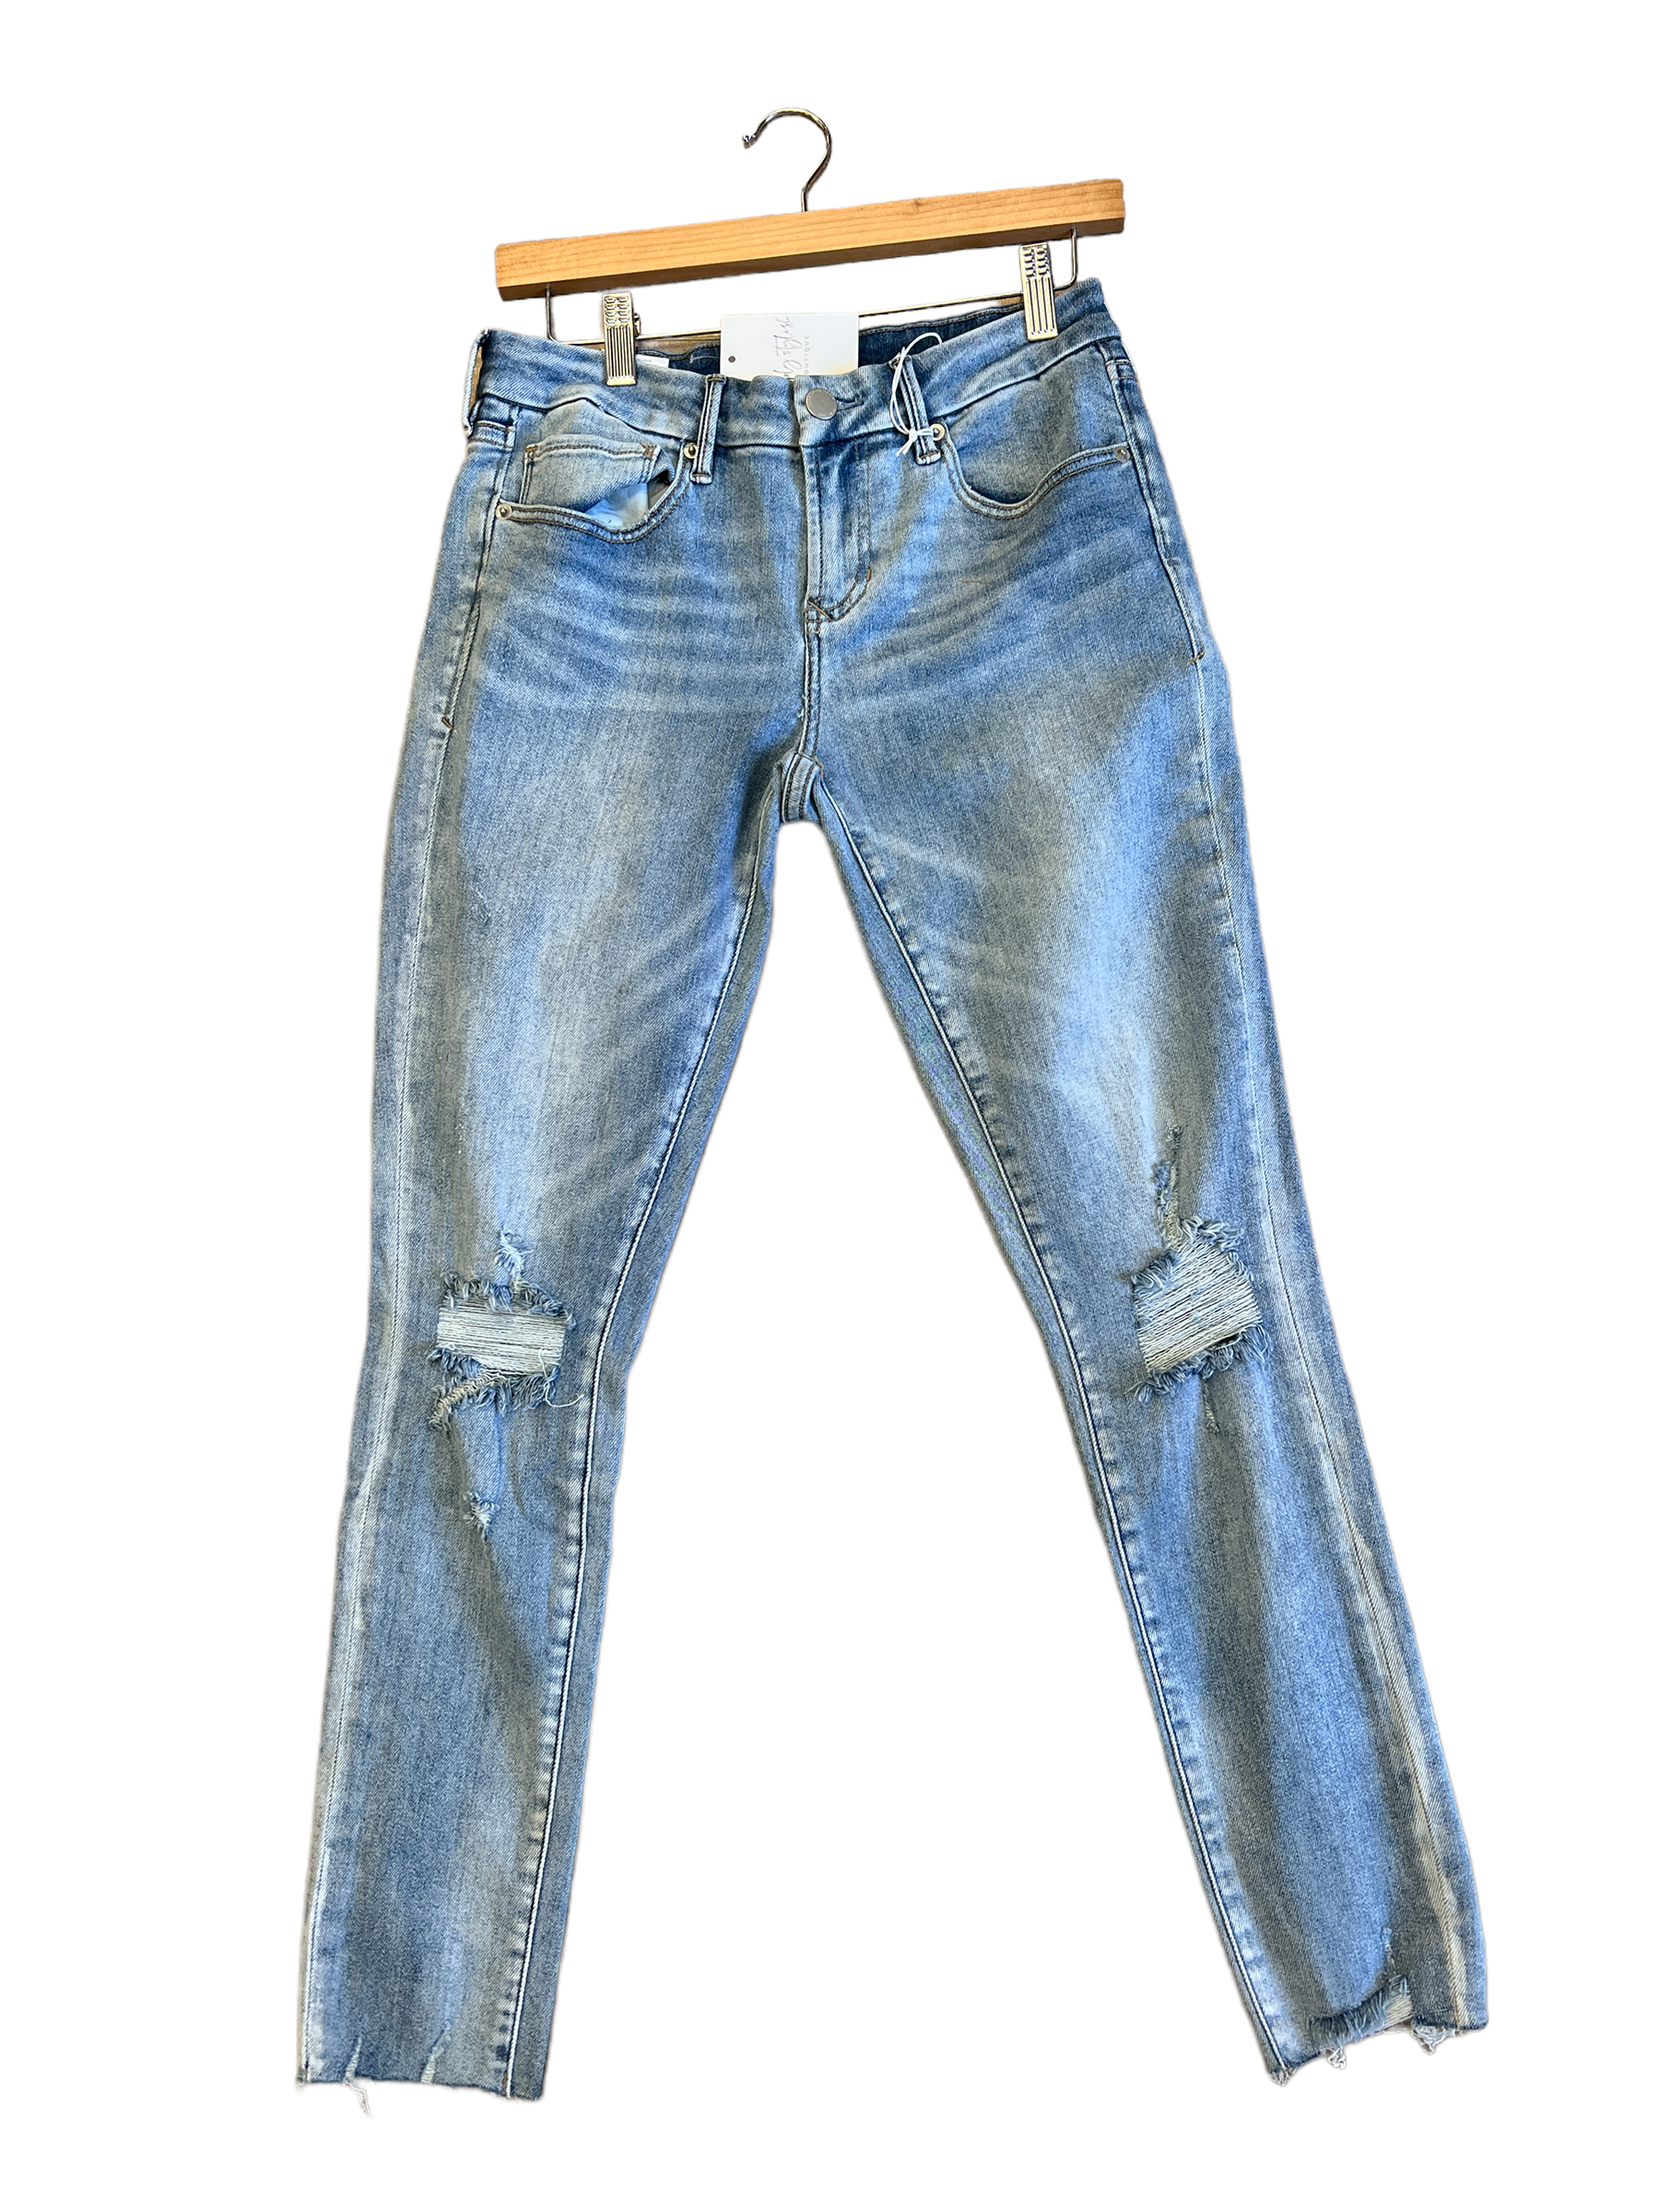 Joyrich Jeans-210 Denim-Simply Stylish Boutique-Simply Stylish Boutique | Women’s & Kid’s Fashion | Paducah, KY